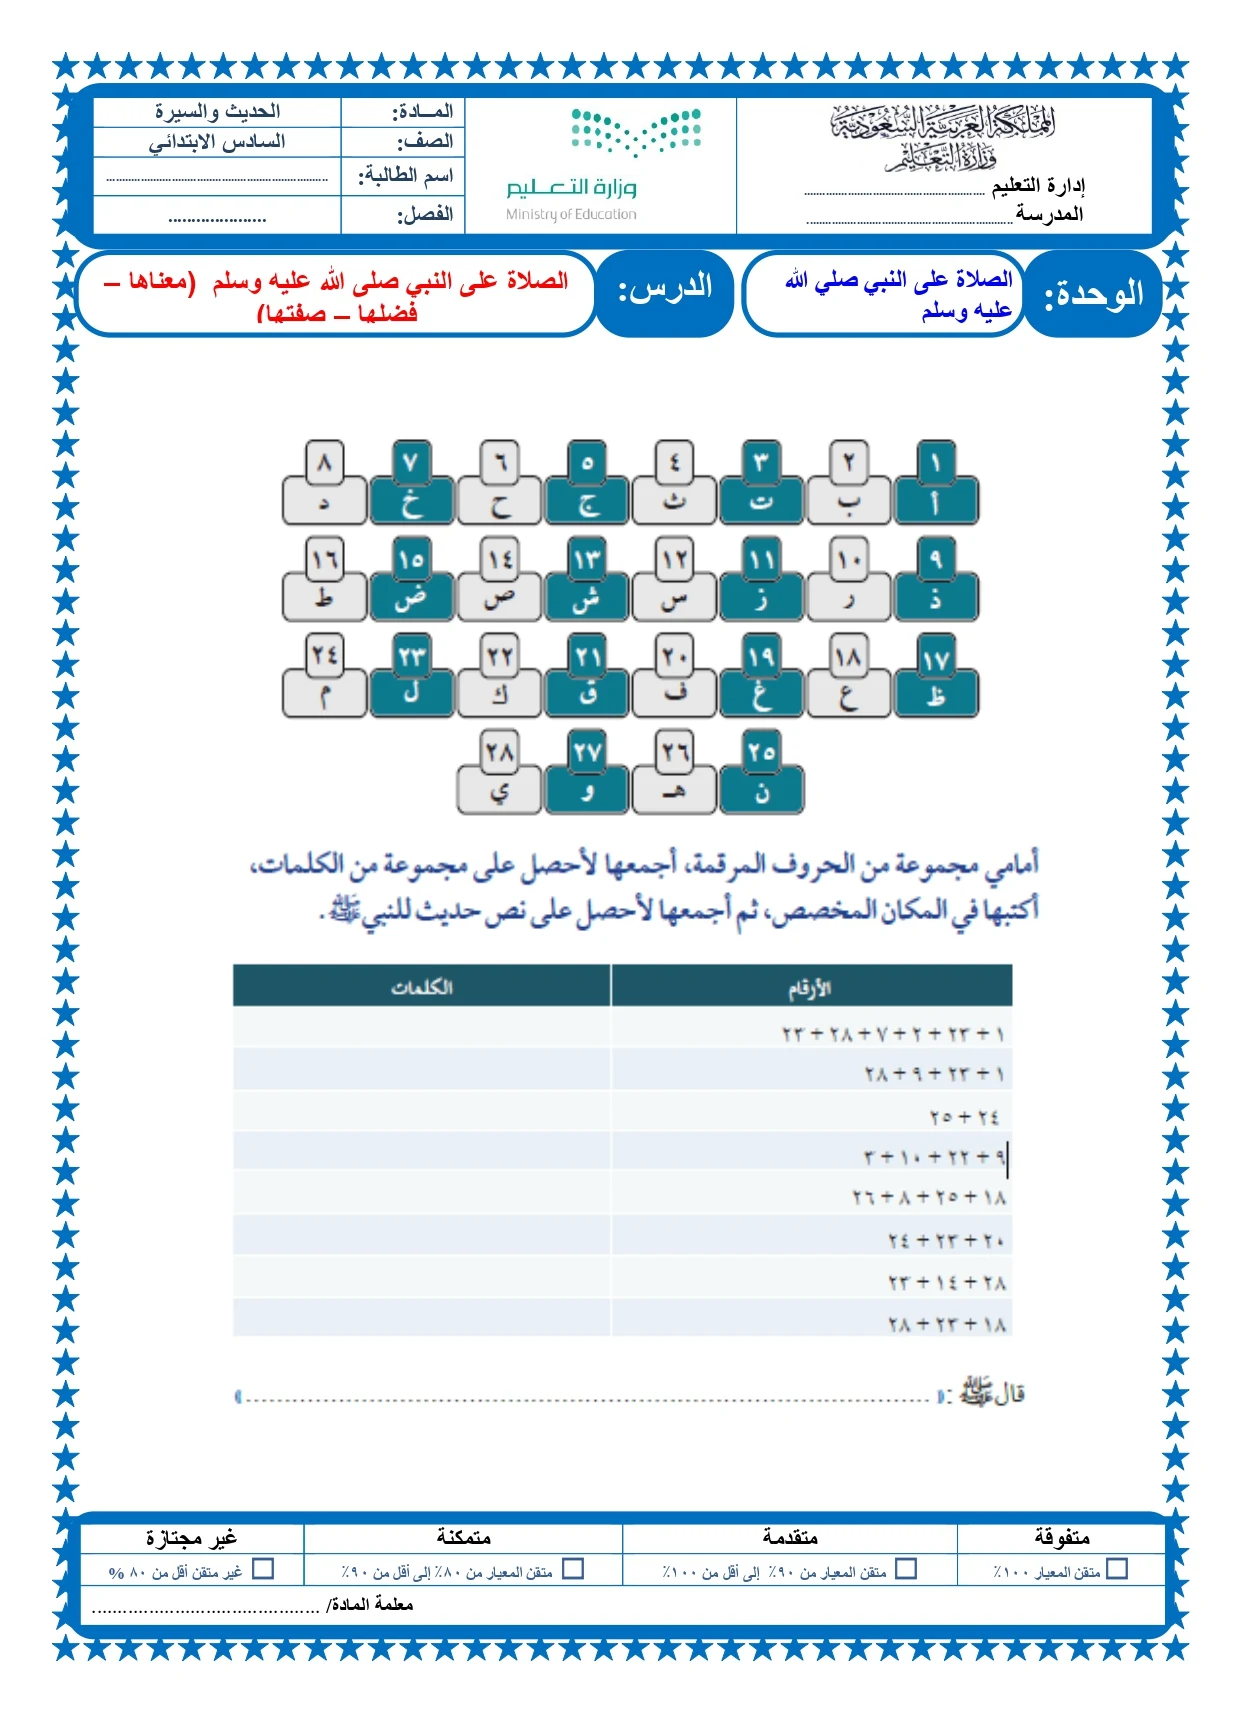 أوراق عمل لمادة التربية الإسلامية الصف السادس الابتدائي الفصل الدراسي الثالث pdf تحميل مباشر مجاني